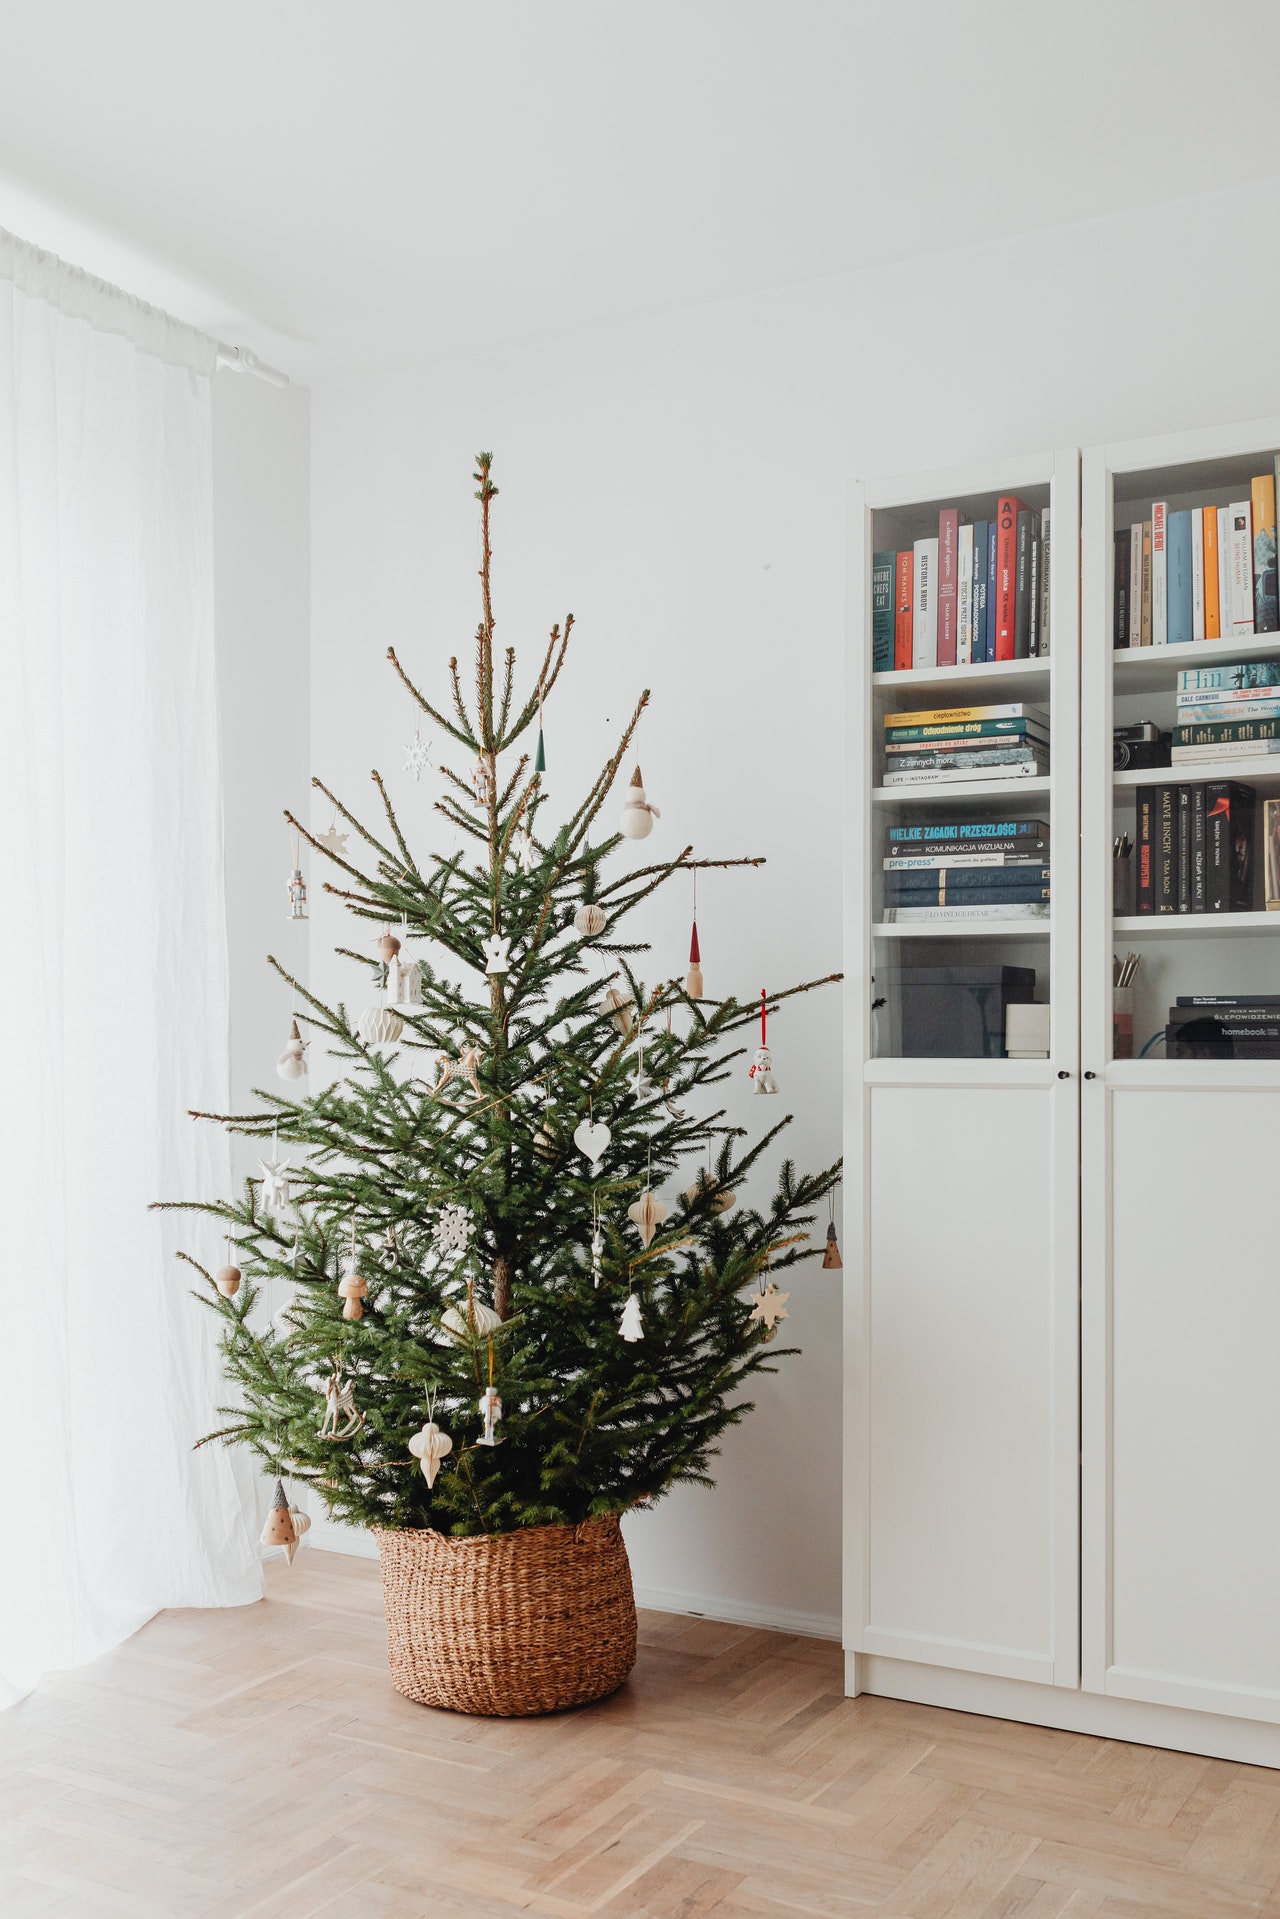 Passo a passo: como decorar uma árvore de Natal 